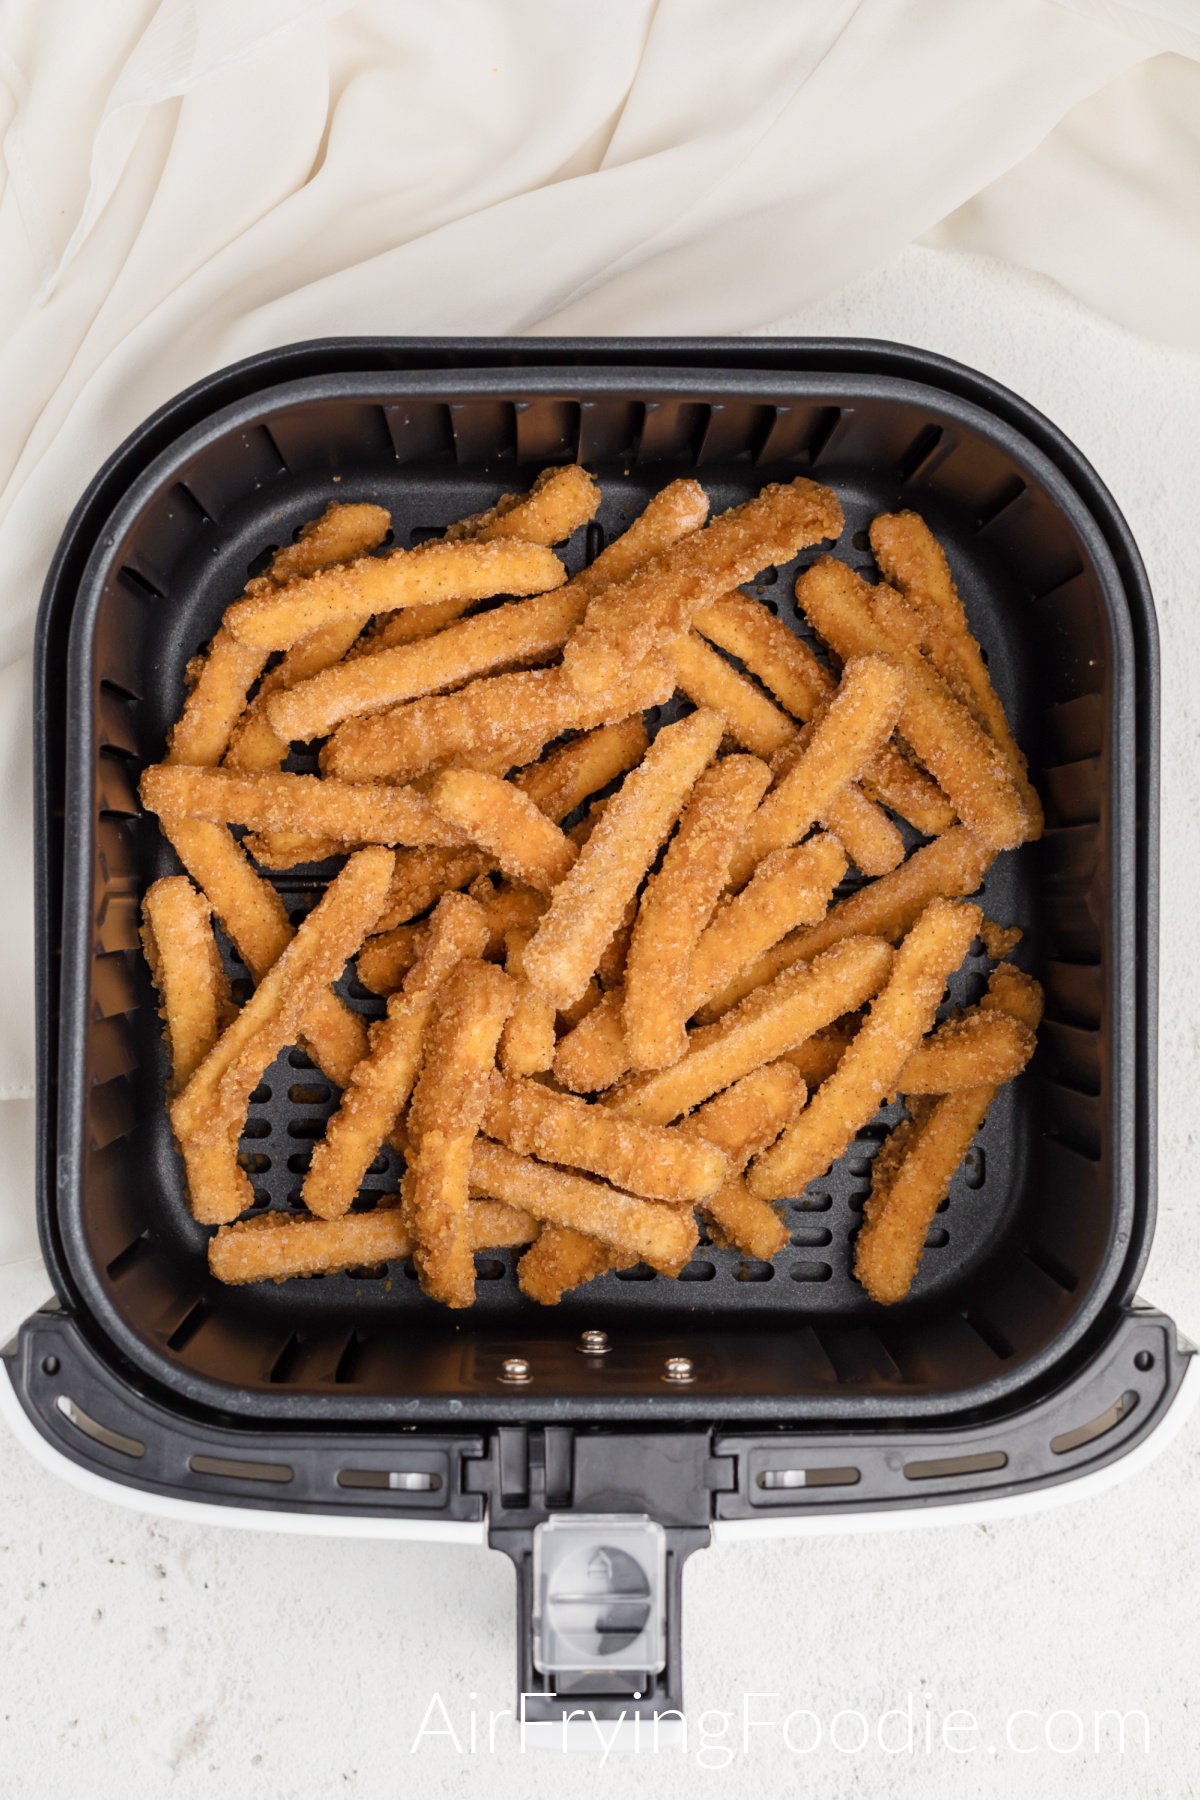 Frozen chicken fries in air fryer basket, ready to cook.